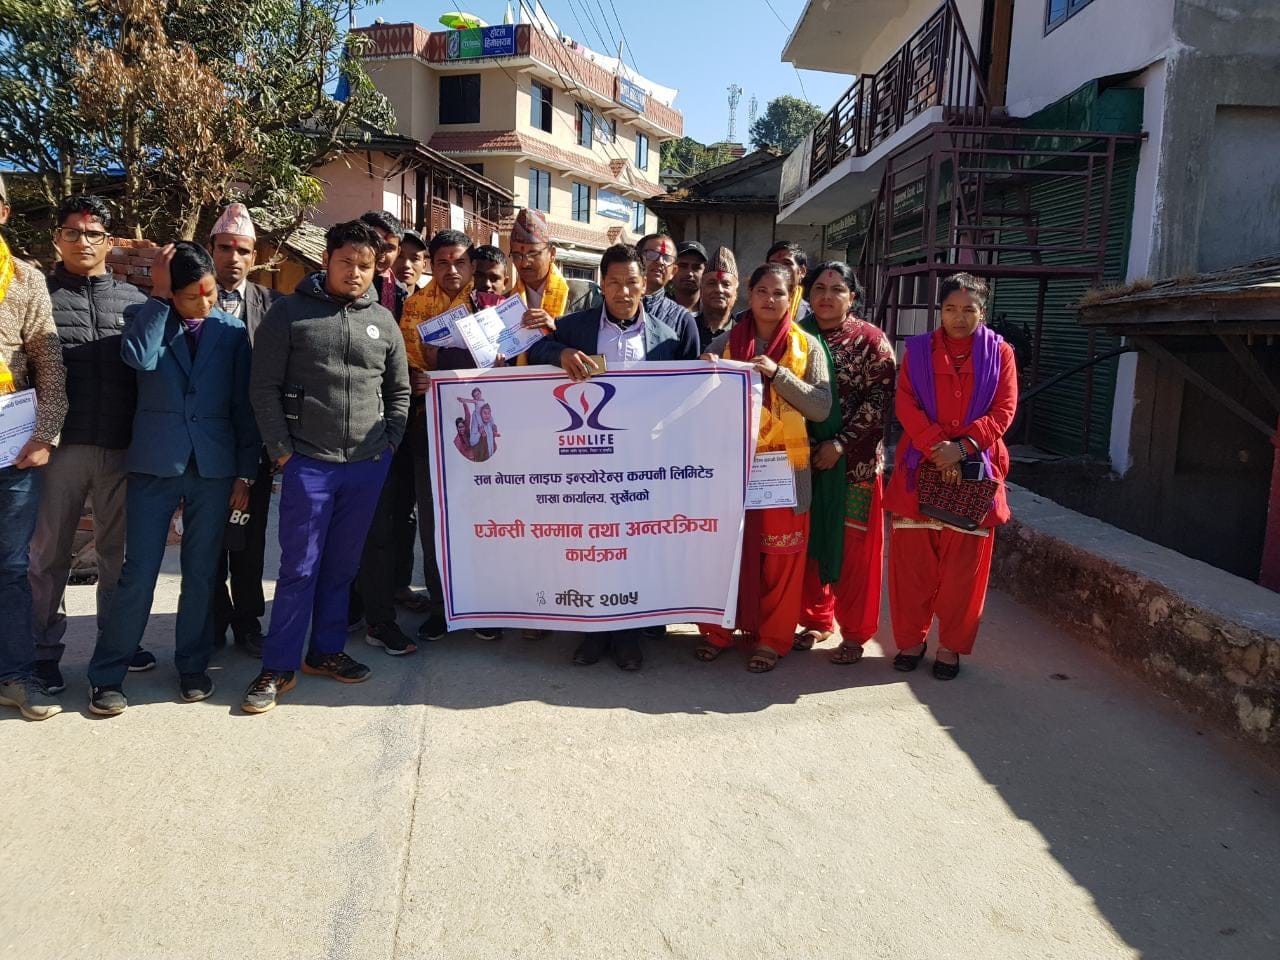 सन नेपाल लाइ फइन्स्योरेन्स कम्पनीद्धारा बीमा जागरण तथा अभिकर्ता सम्मान कार्यक्रम संचालन